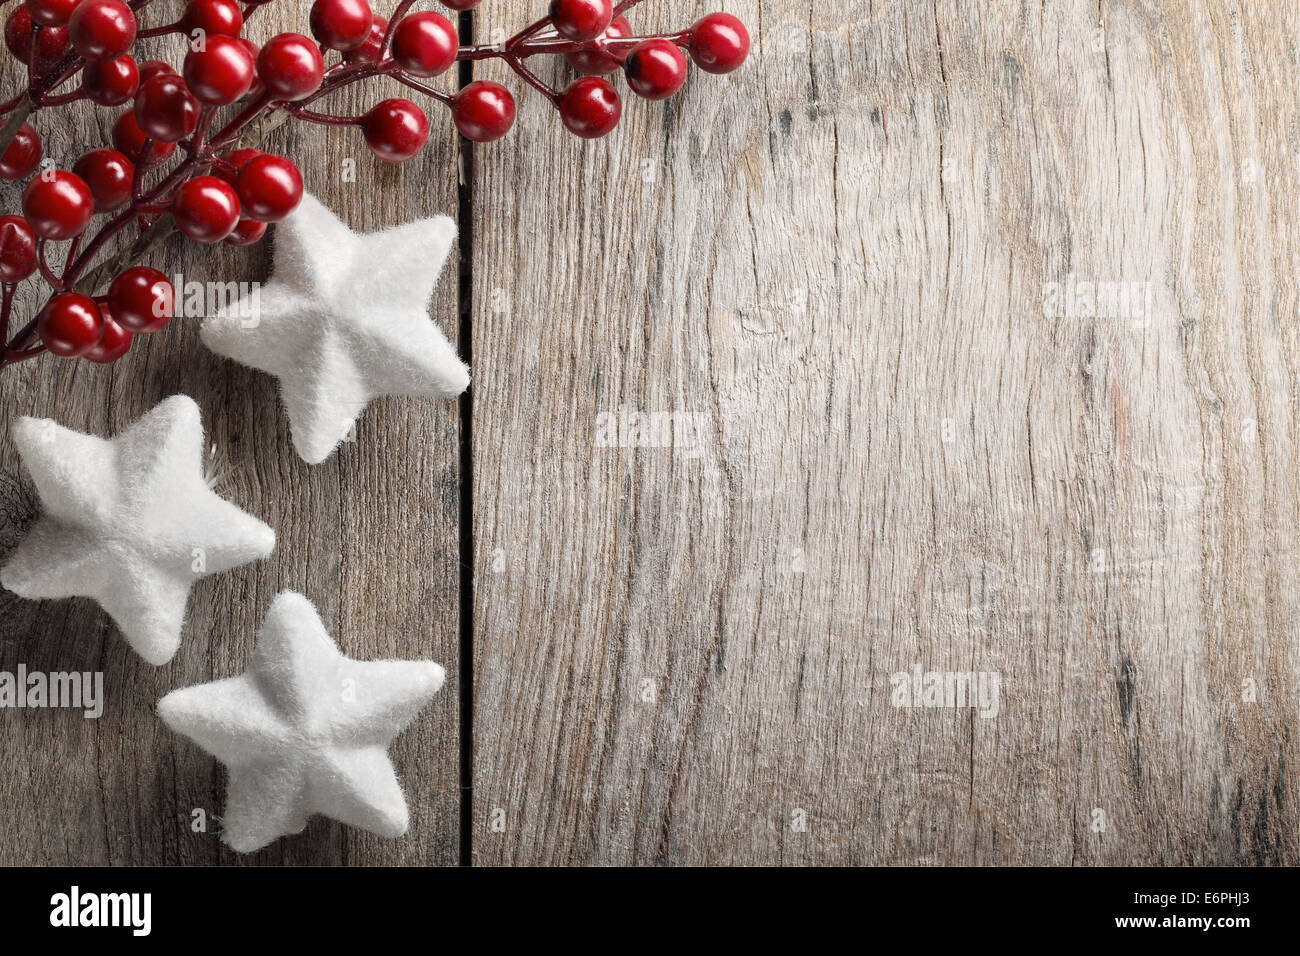 Christmas decoration on wood background Stock Photo